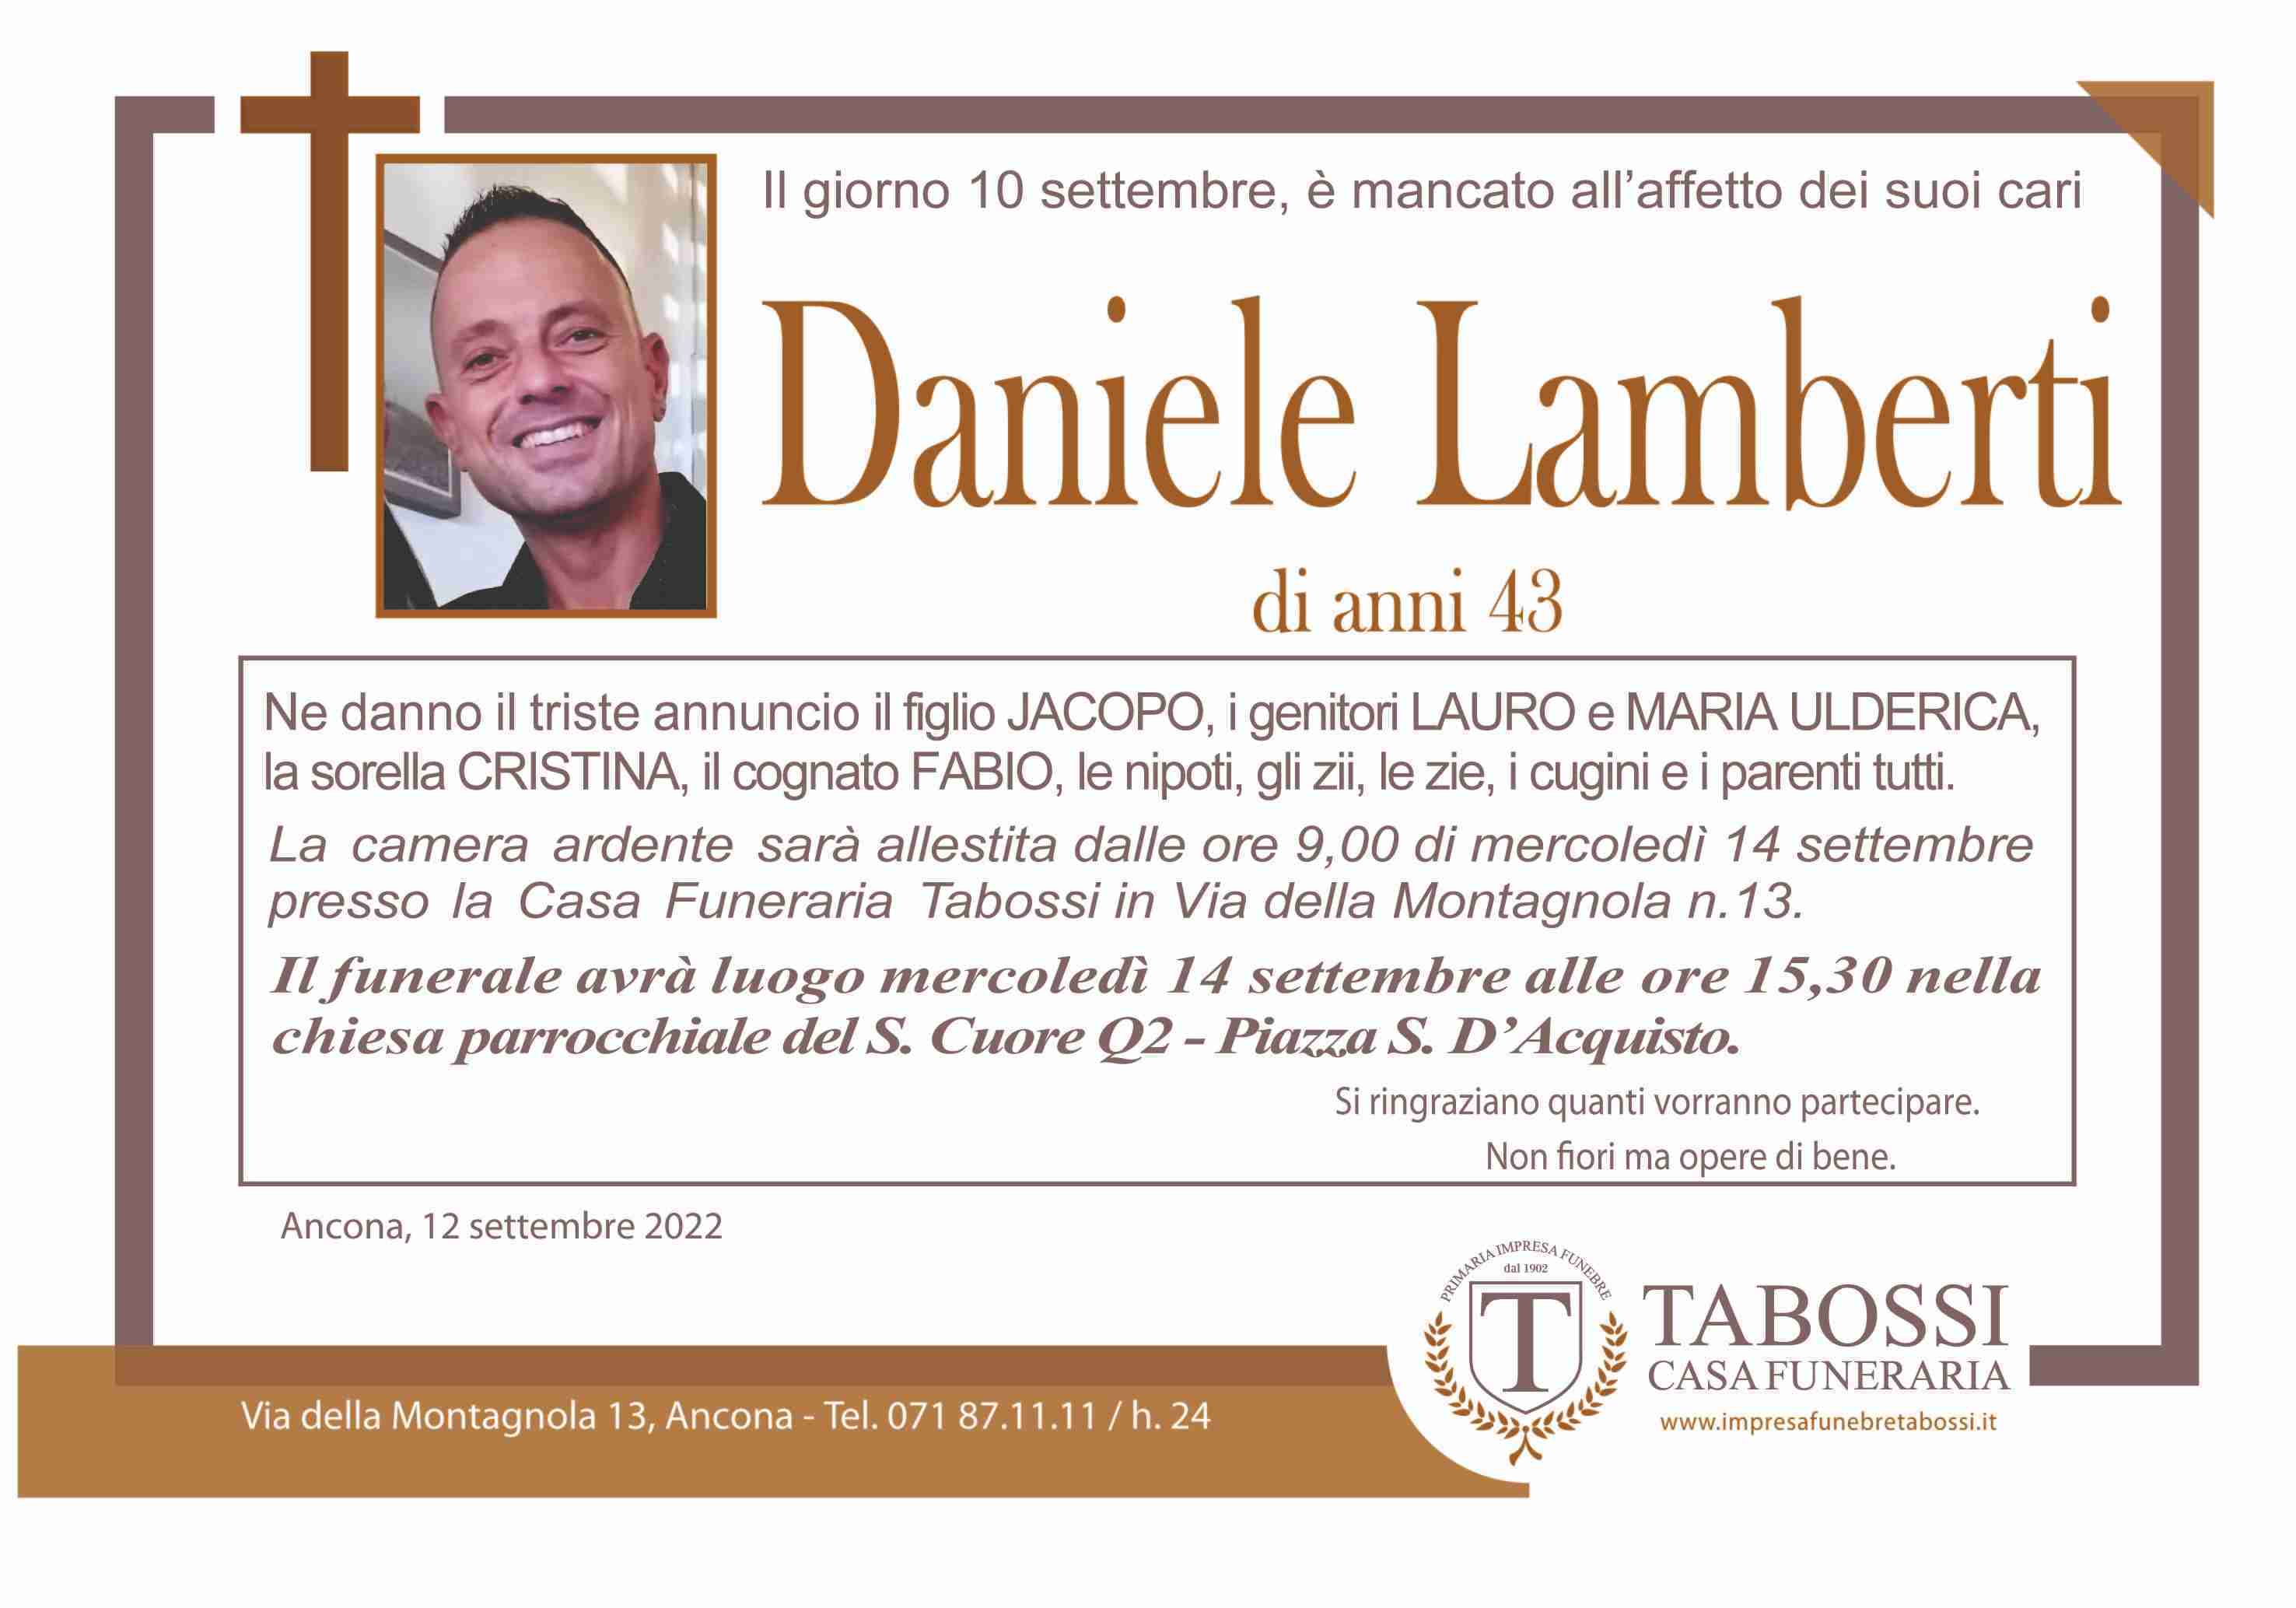 Daniele Lamberti